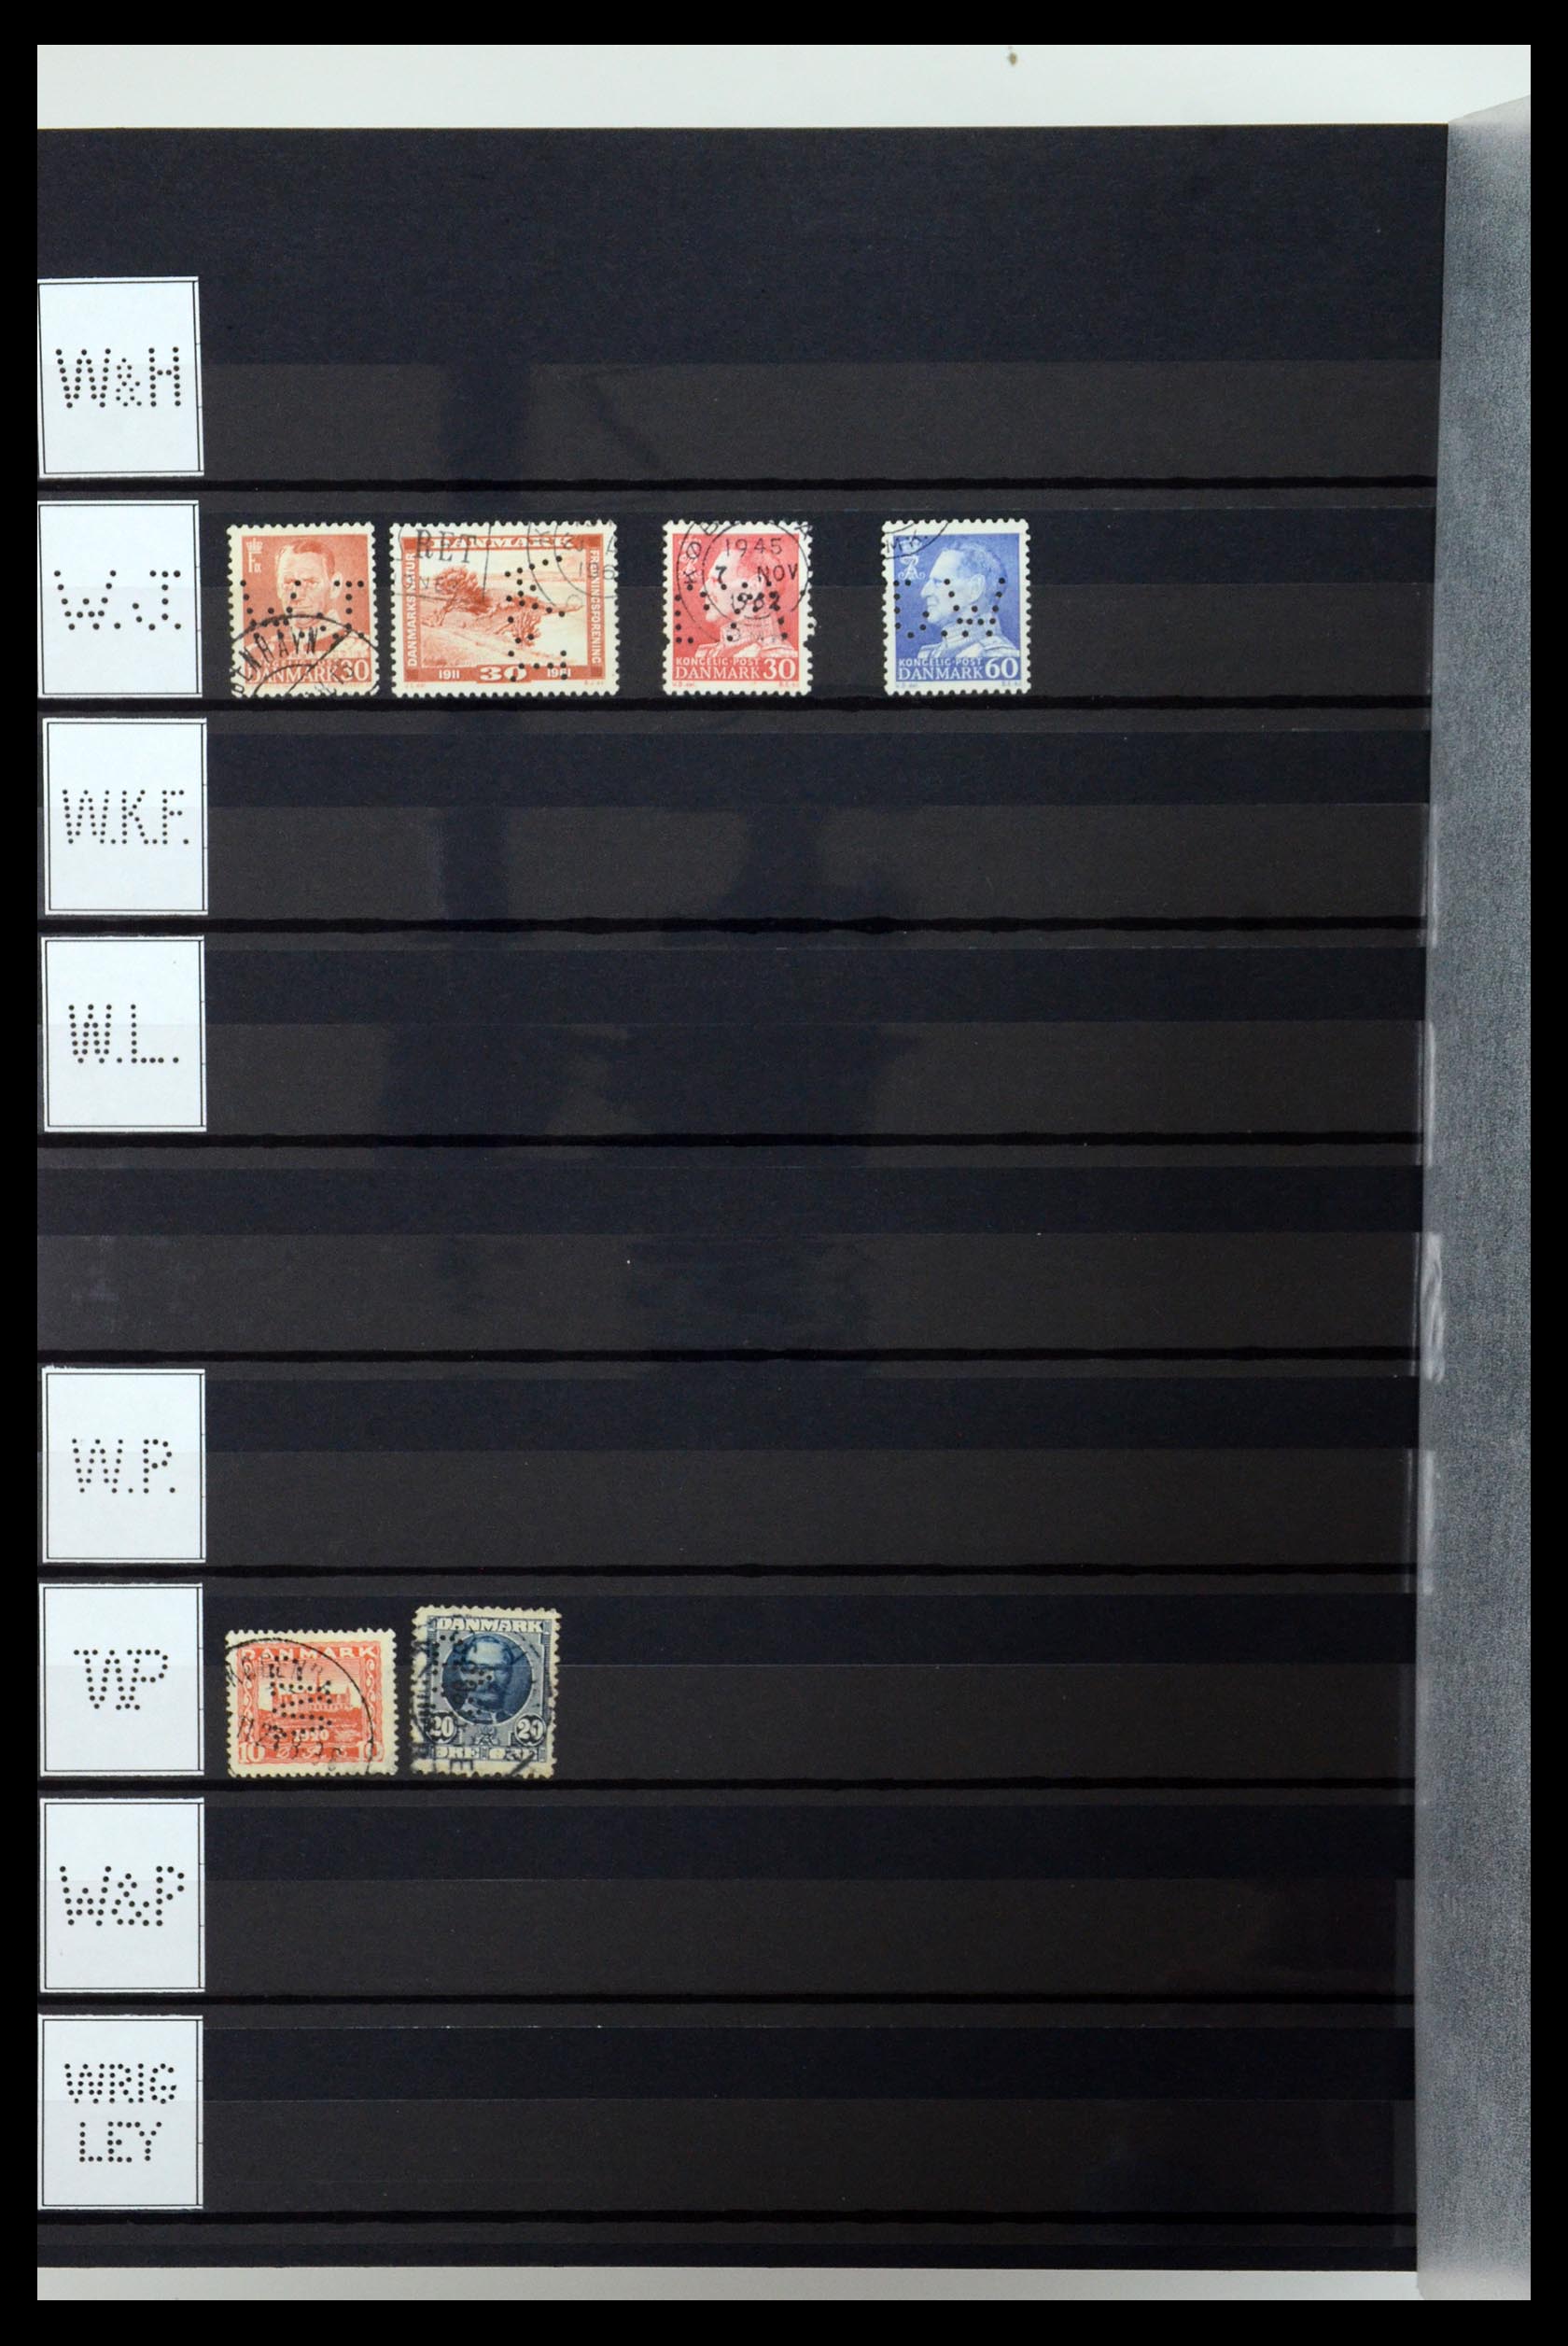 36396 225 - Postzegelverzameling 36396 Denemarken perfins.